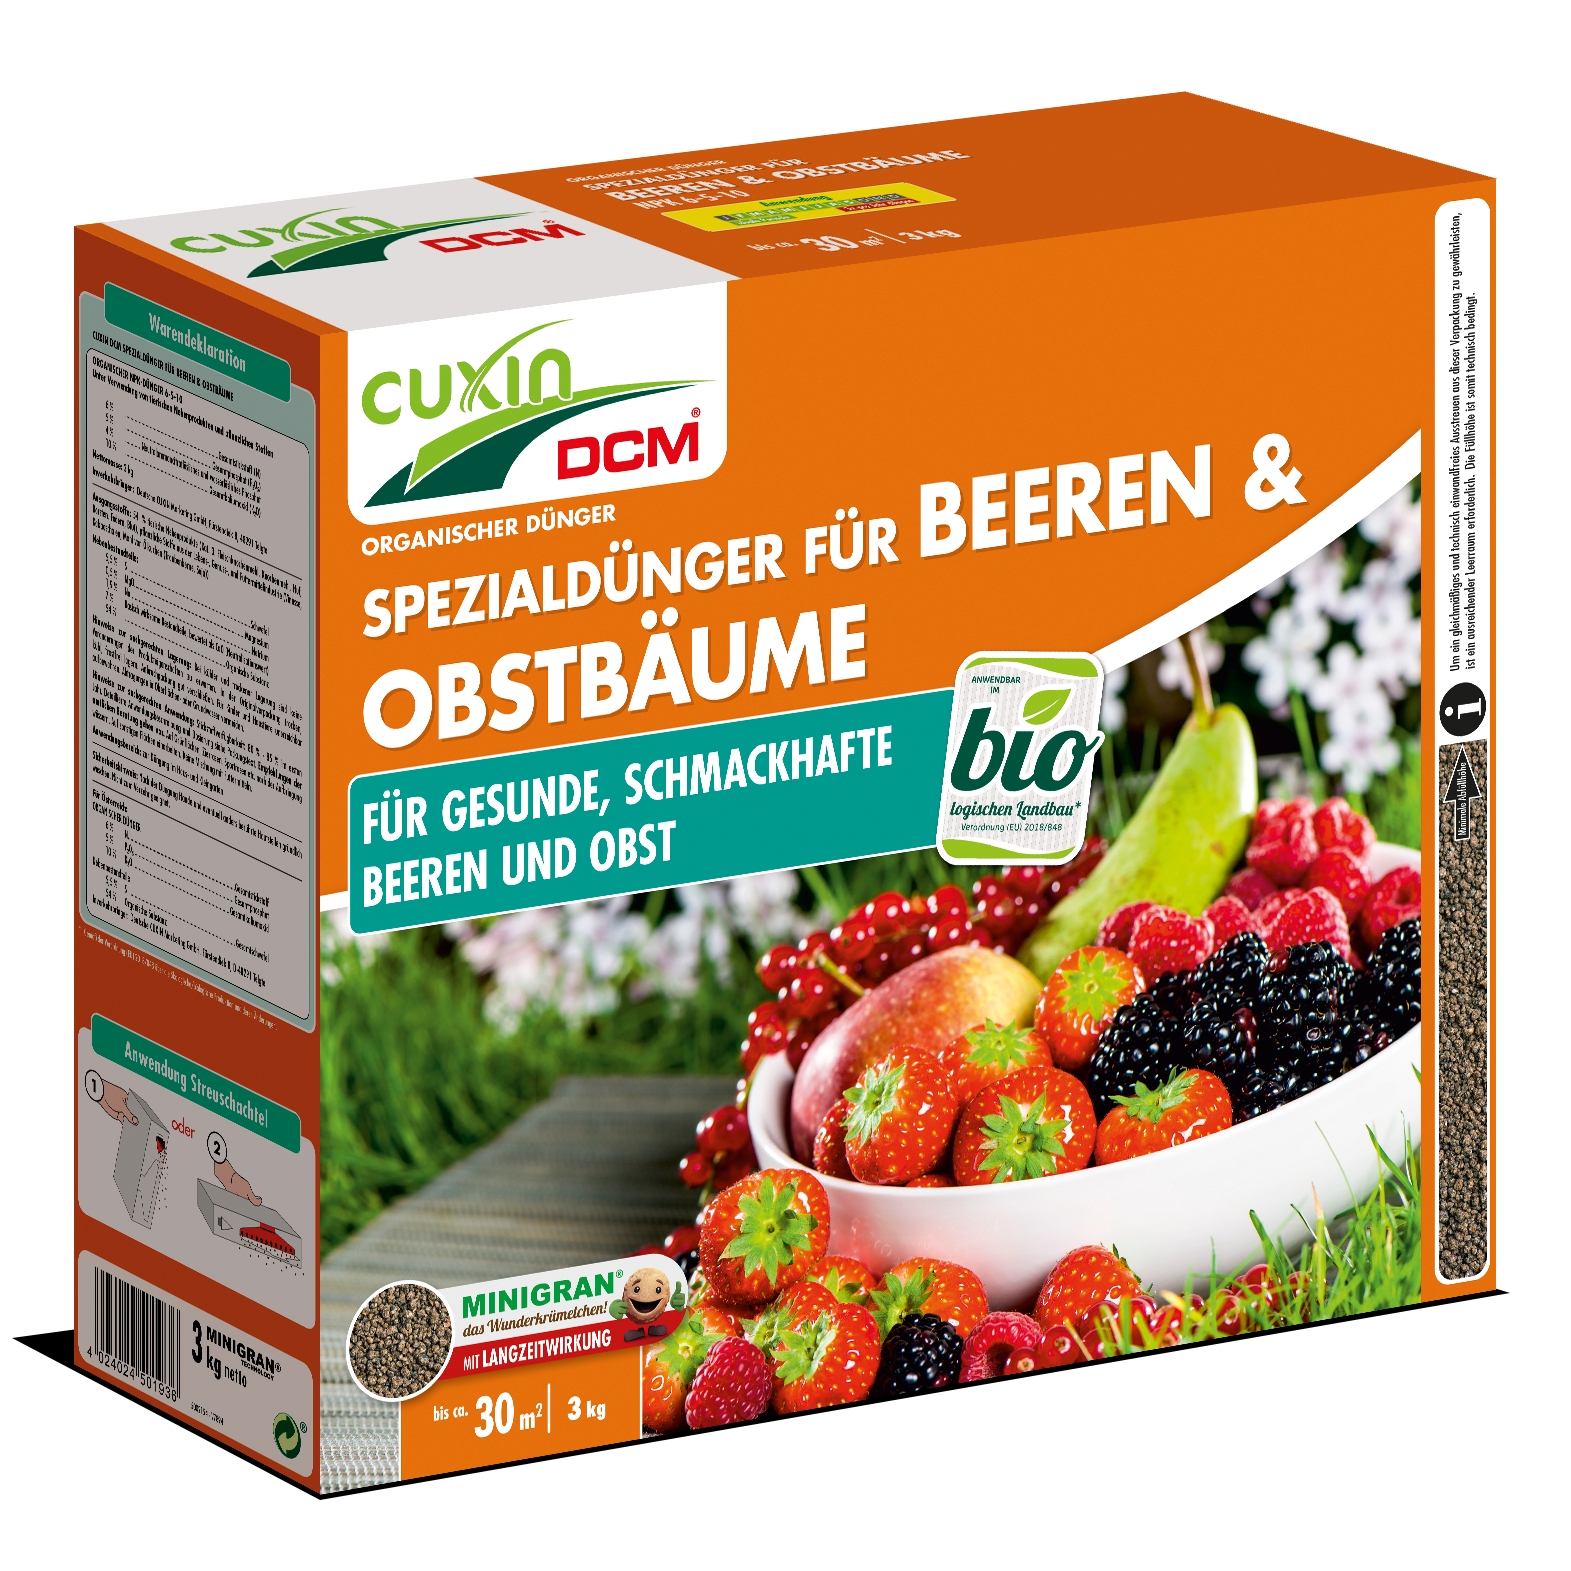 Cuxin DCM Bio Spezialdünger für Beeren & Obstbäume 3 kg